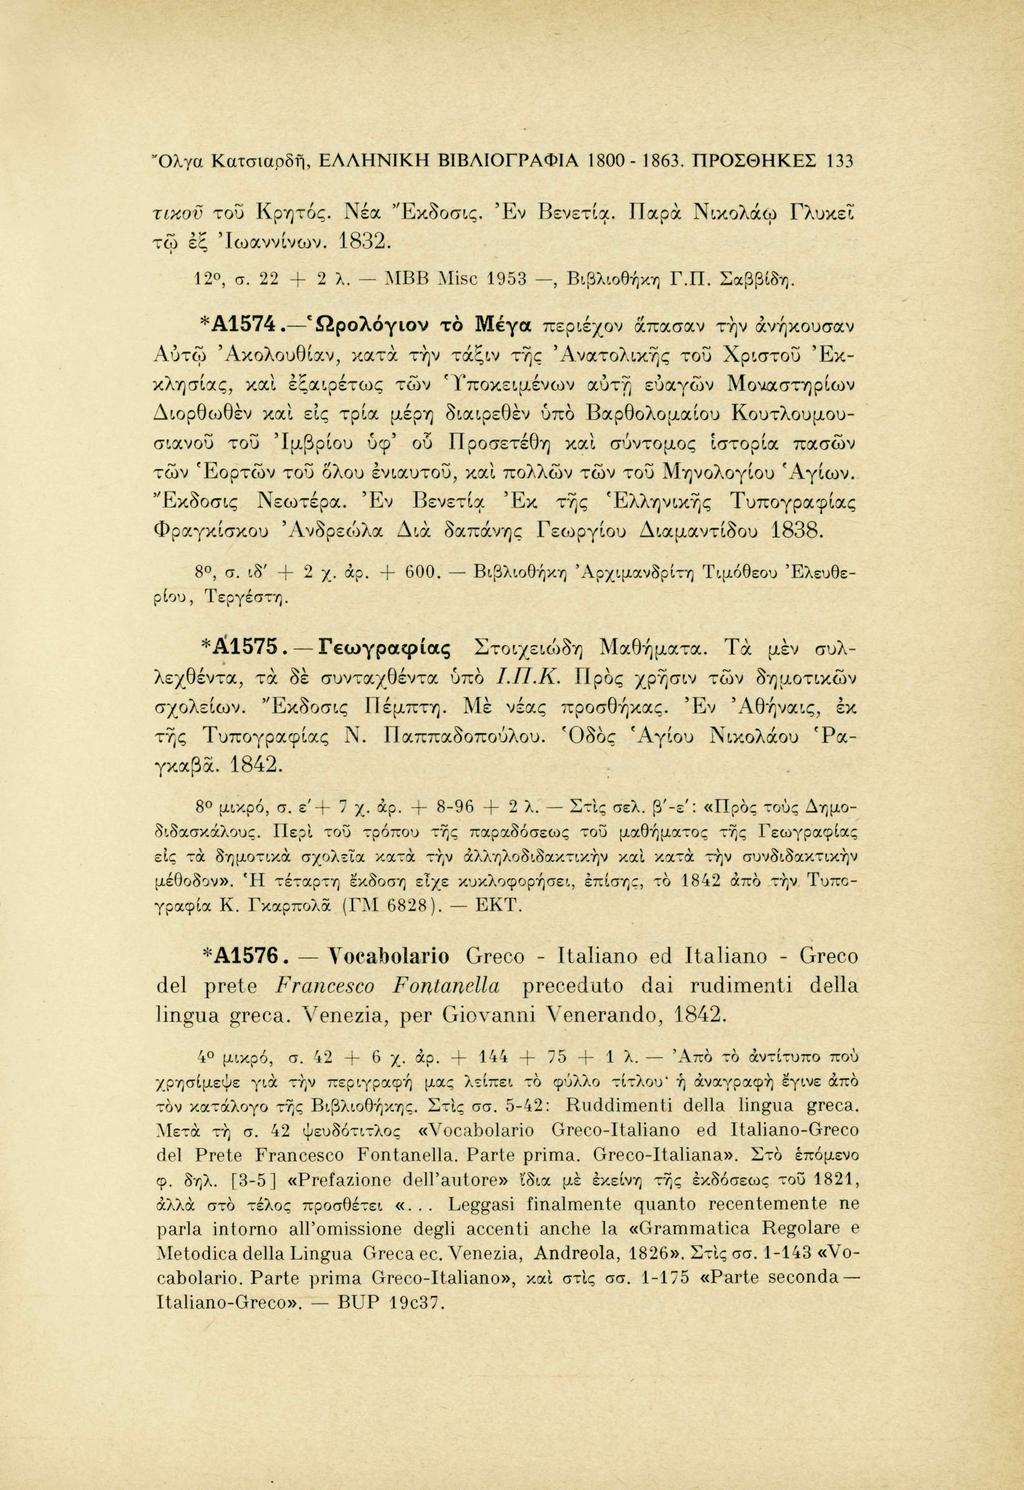 "Ολγα Κατσιαρδή, ΕΛΛΗΝΙΚΗ ΒΙΒΛΙΟΓΡΑΦΙΑ 1800-1863. ΠΡΟΣΘΗΚΕΣ 133 τικον τοΰ Κρητός. Νέα Έκδοσις. Έν Βενετία. Παρά Νικολάω Γλυκεΐ τω εξ 'Ιωαννίνων. 1832. 12", σ. 22 + 2 λ. MBB Mise 1953, Βιβλιοθήκη Γ.Π. Σαββίδη.